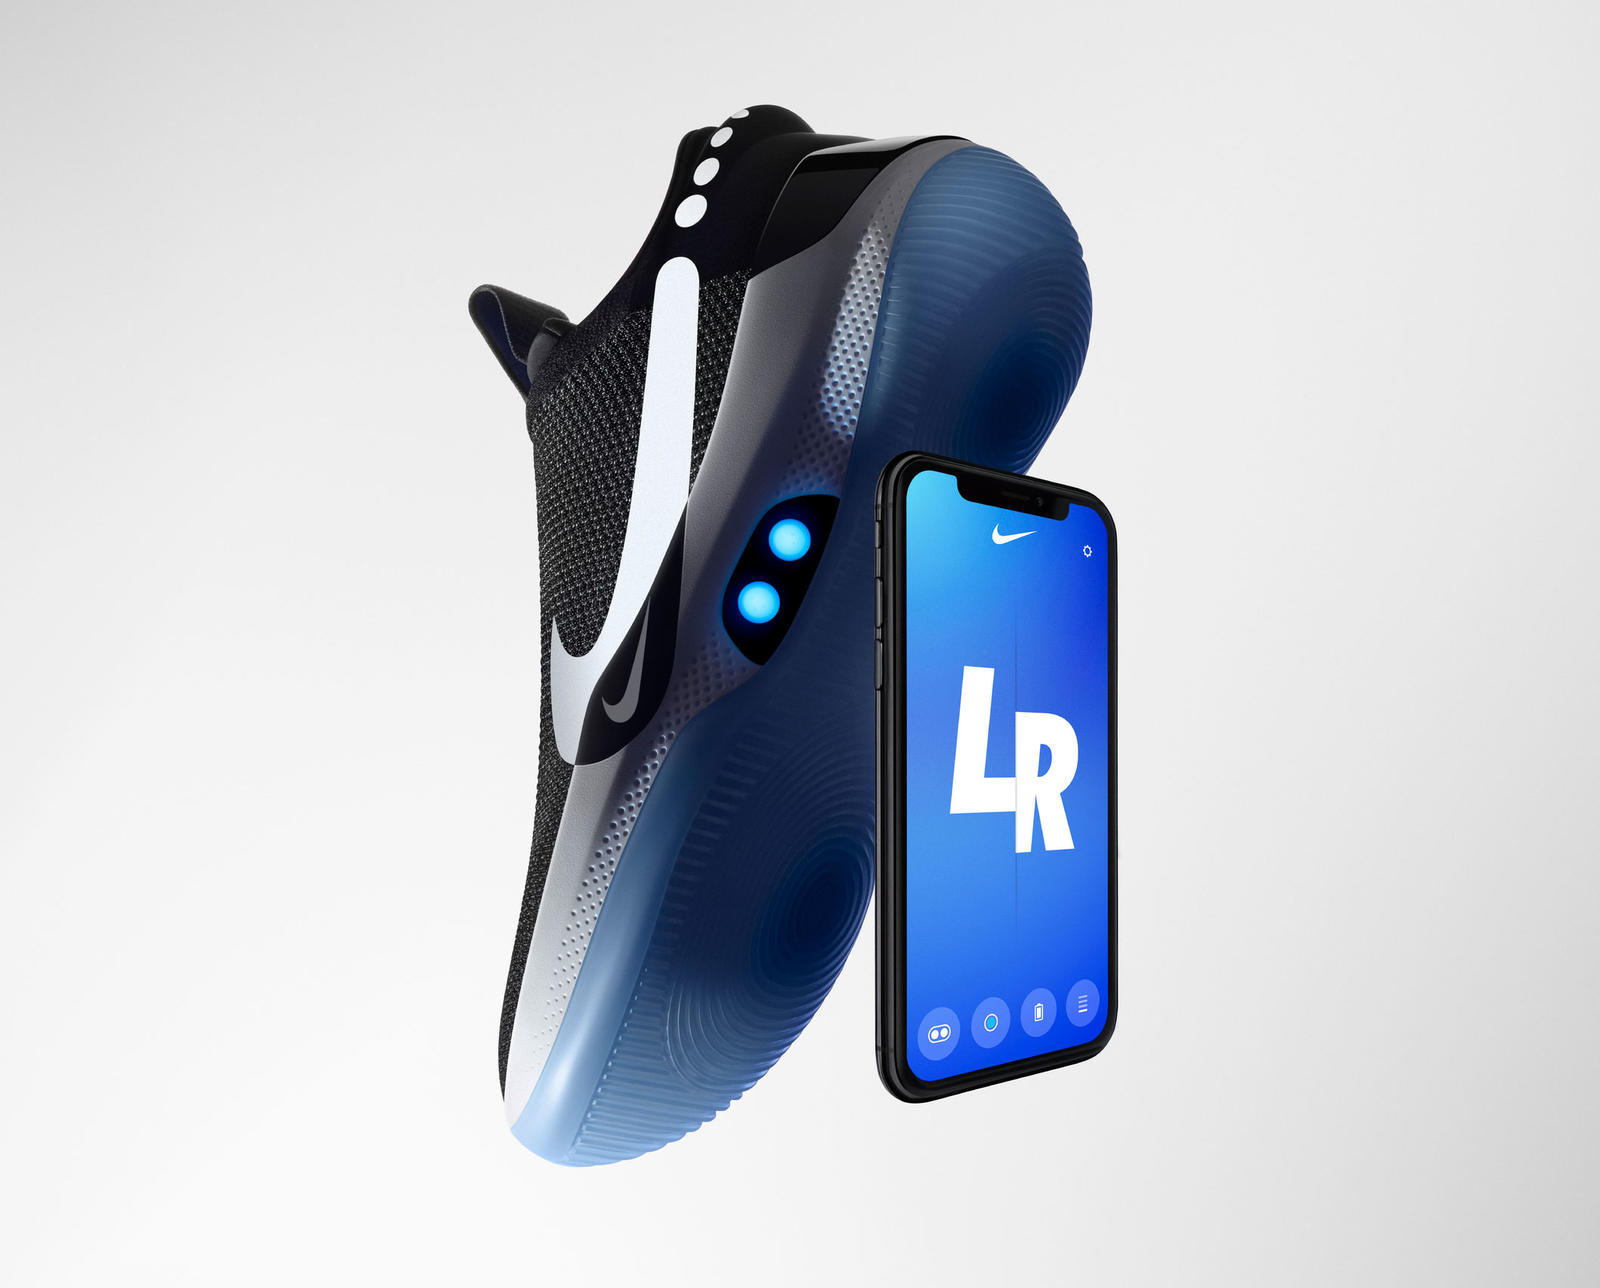 Nike Adapt BB to buty do koszykówki, które dopasowywują się do stopy oraz są połączone ze smartfonem!